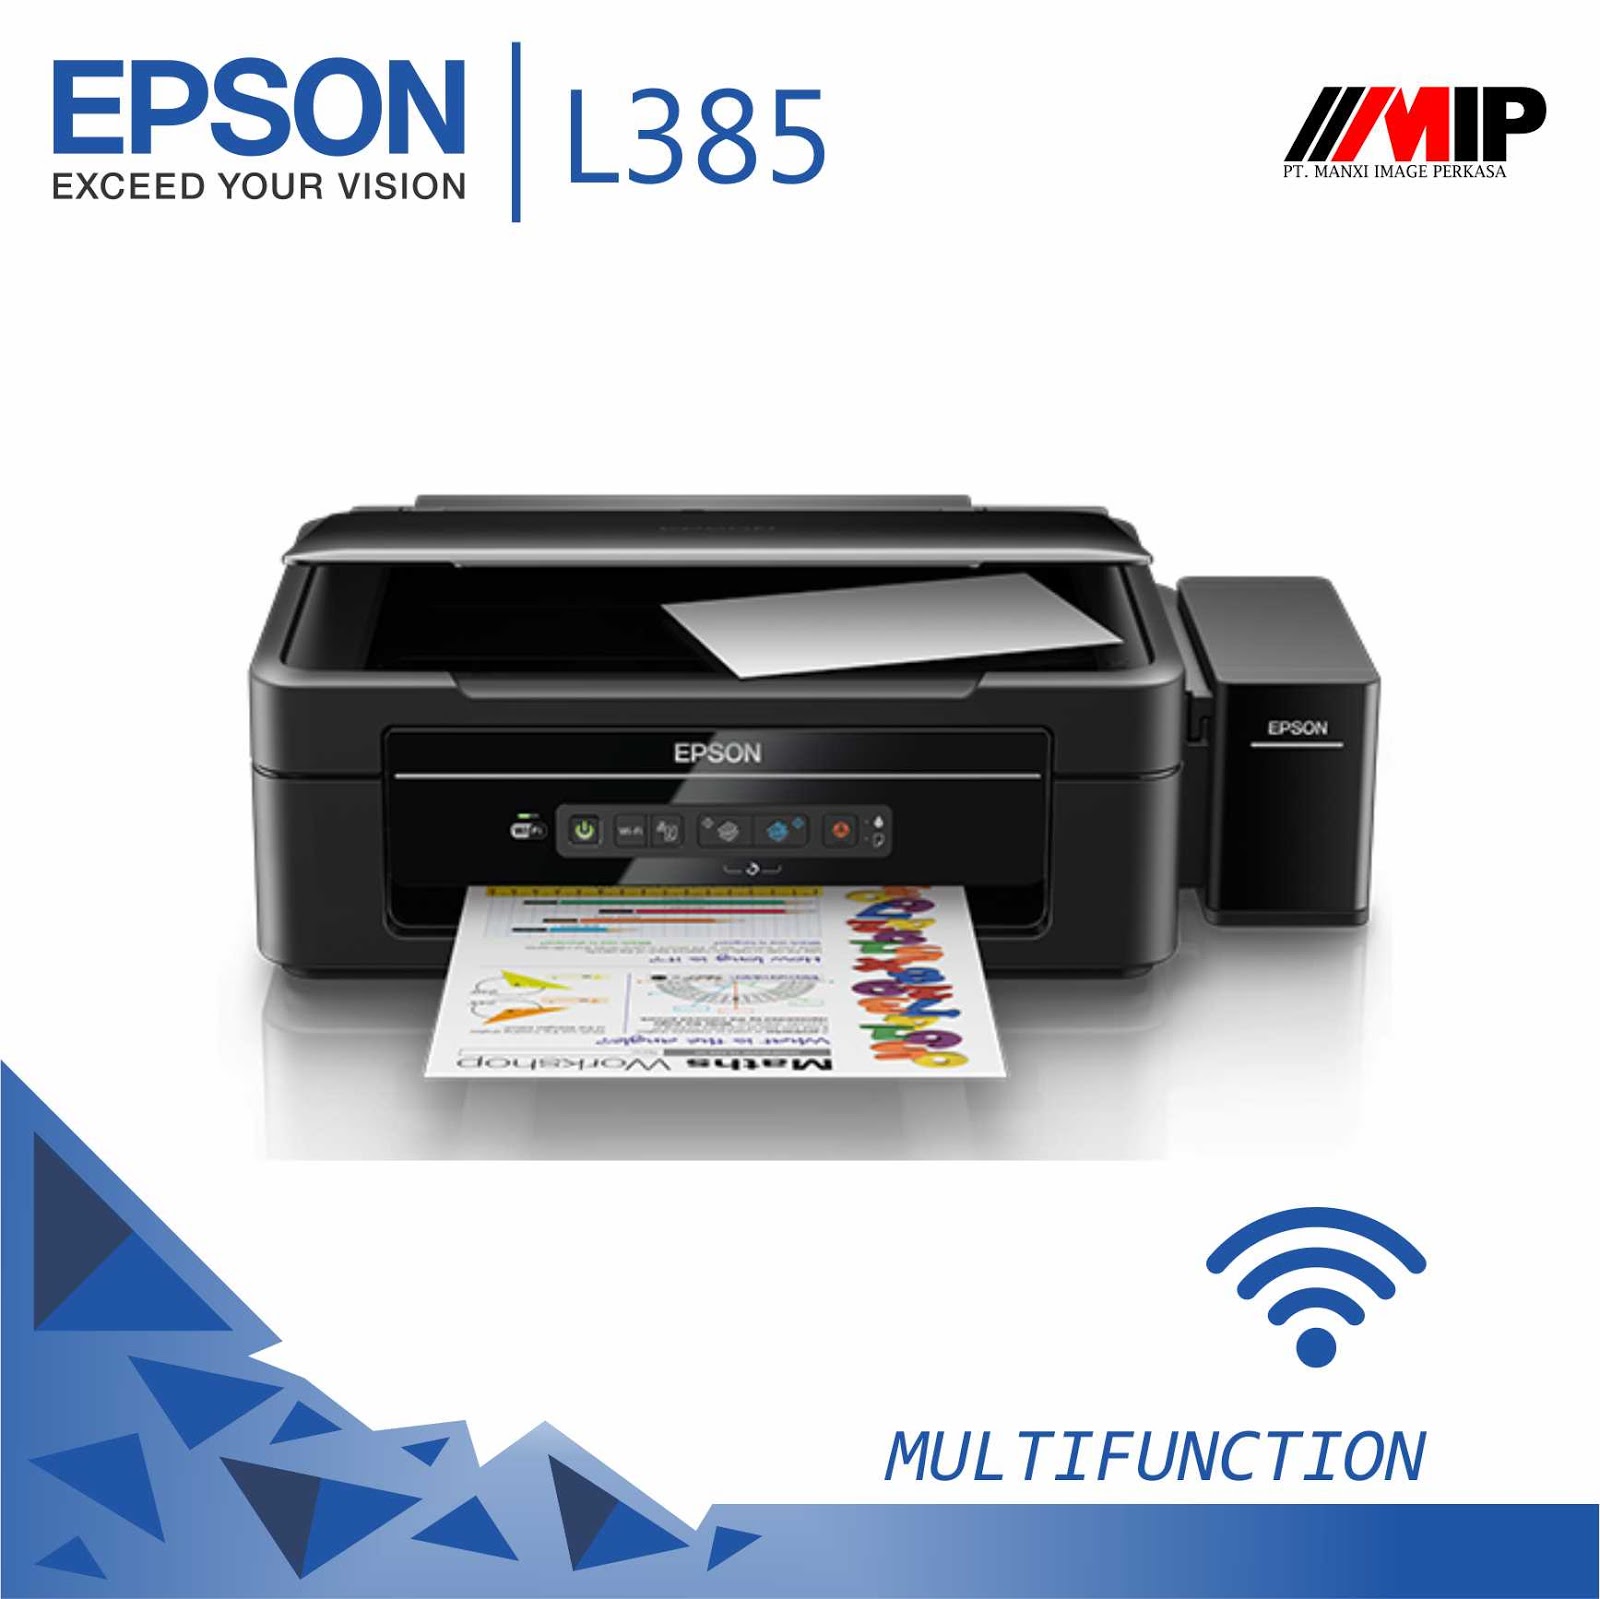  Jual Printer Epson L385 Multifungsi Murah Toko Printer Murah